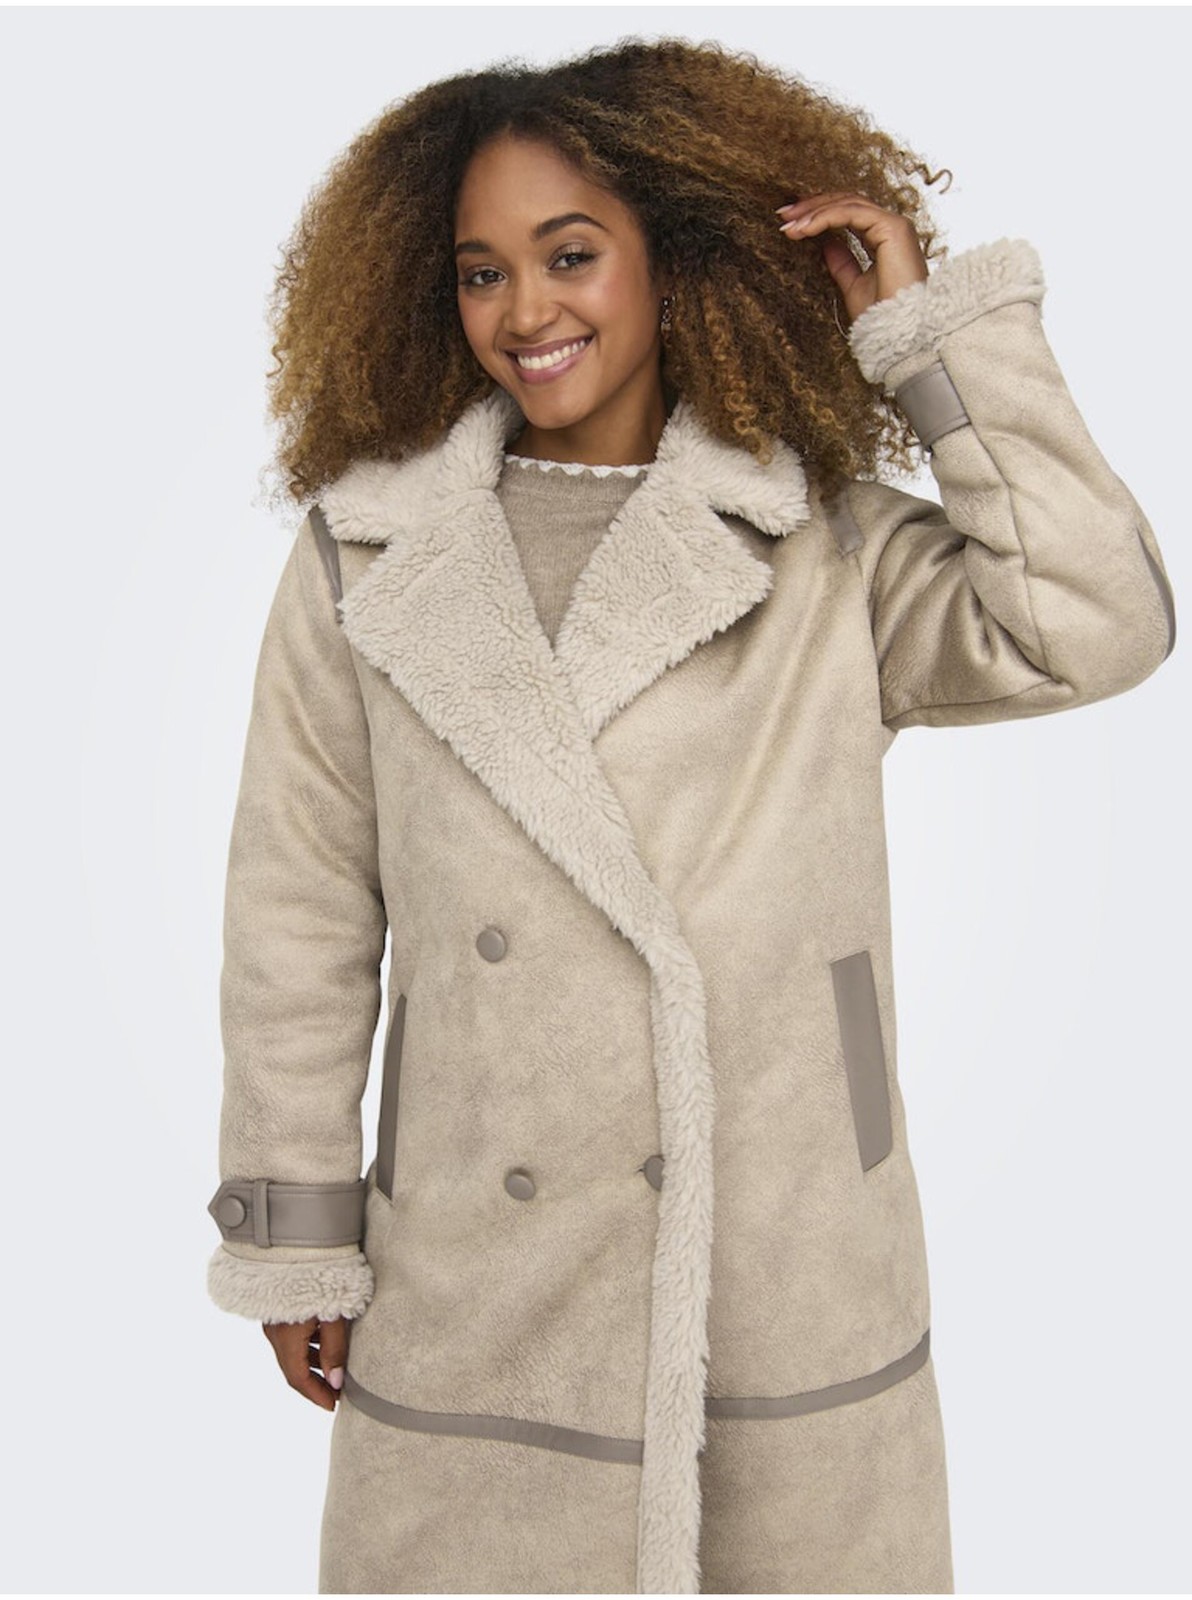 Béžový dámský kabát v semišové úpravě s umělým kožíškem ONLY Ylva - Dámské